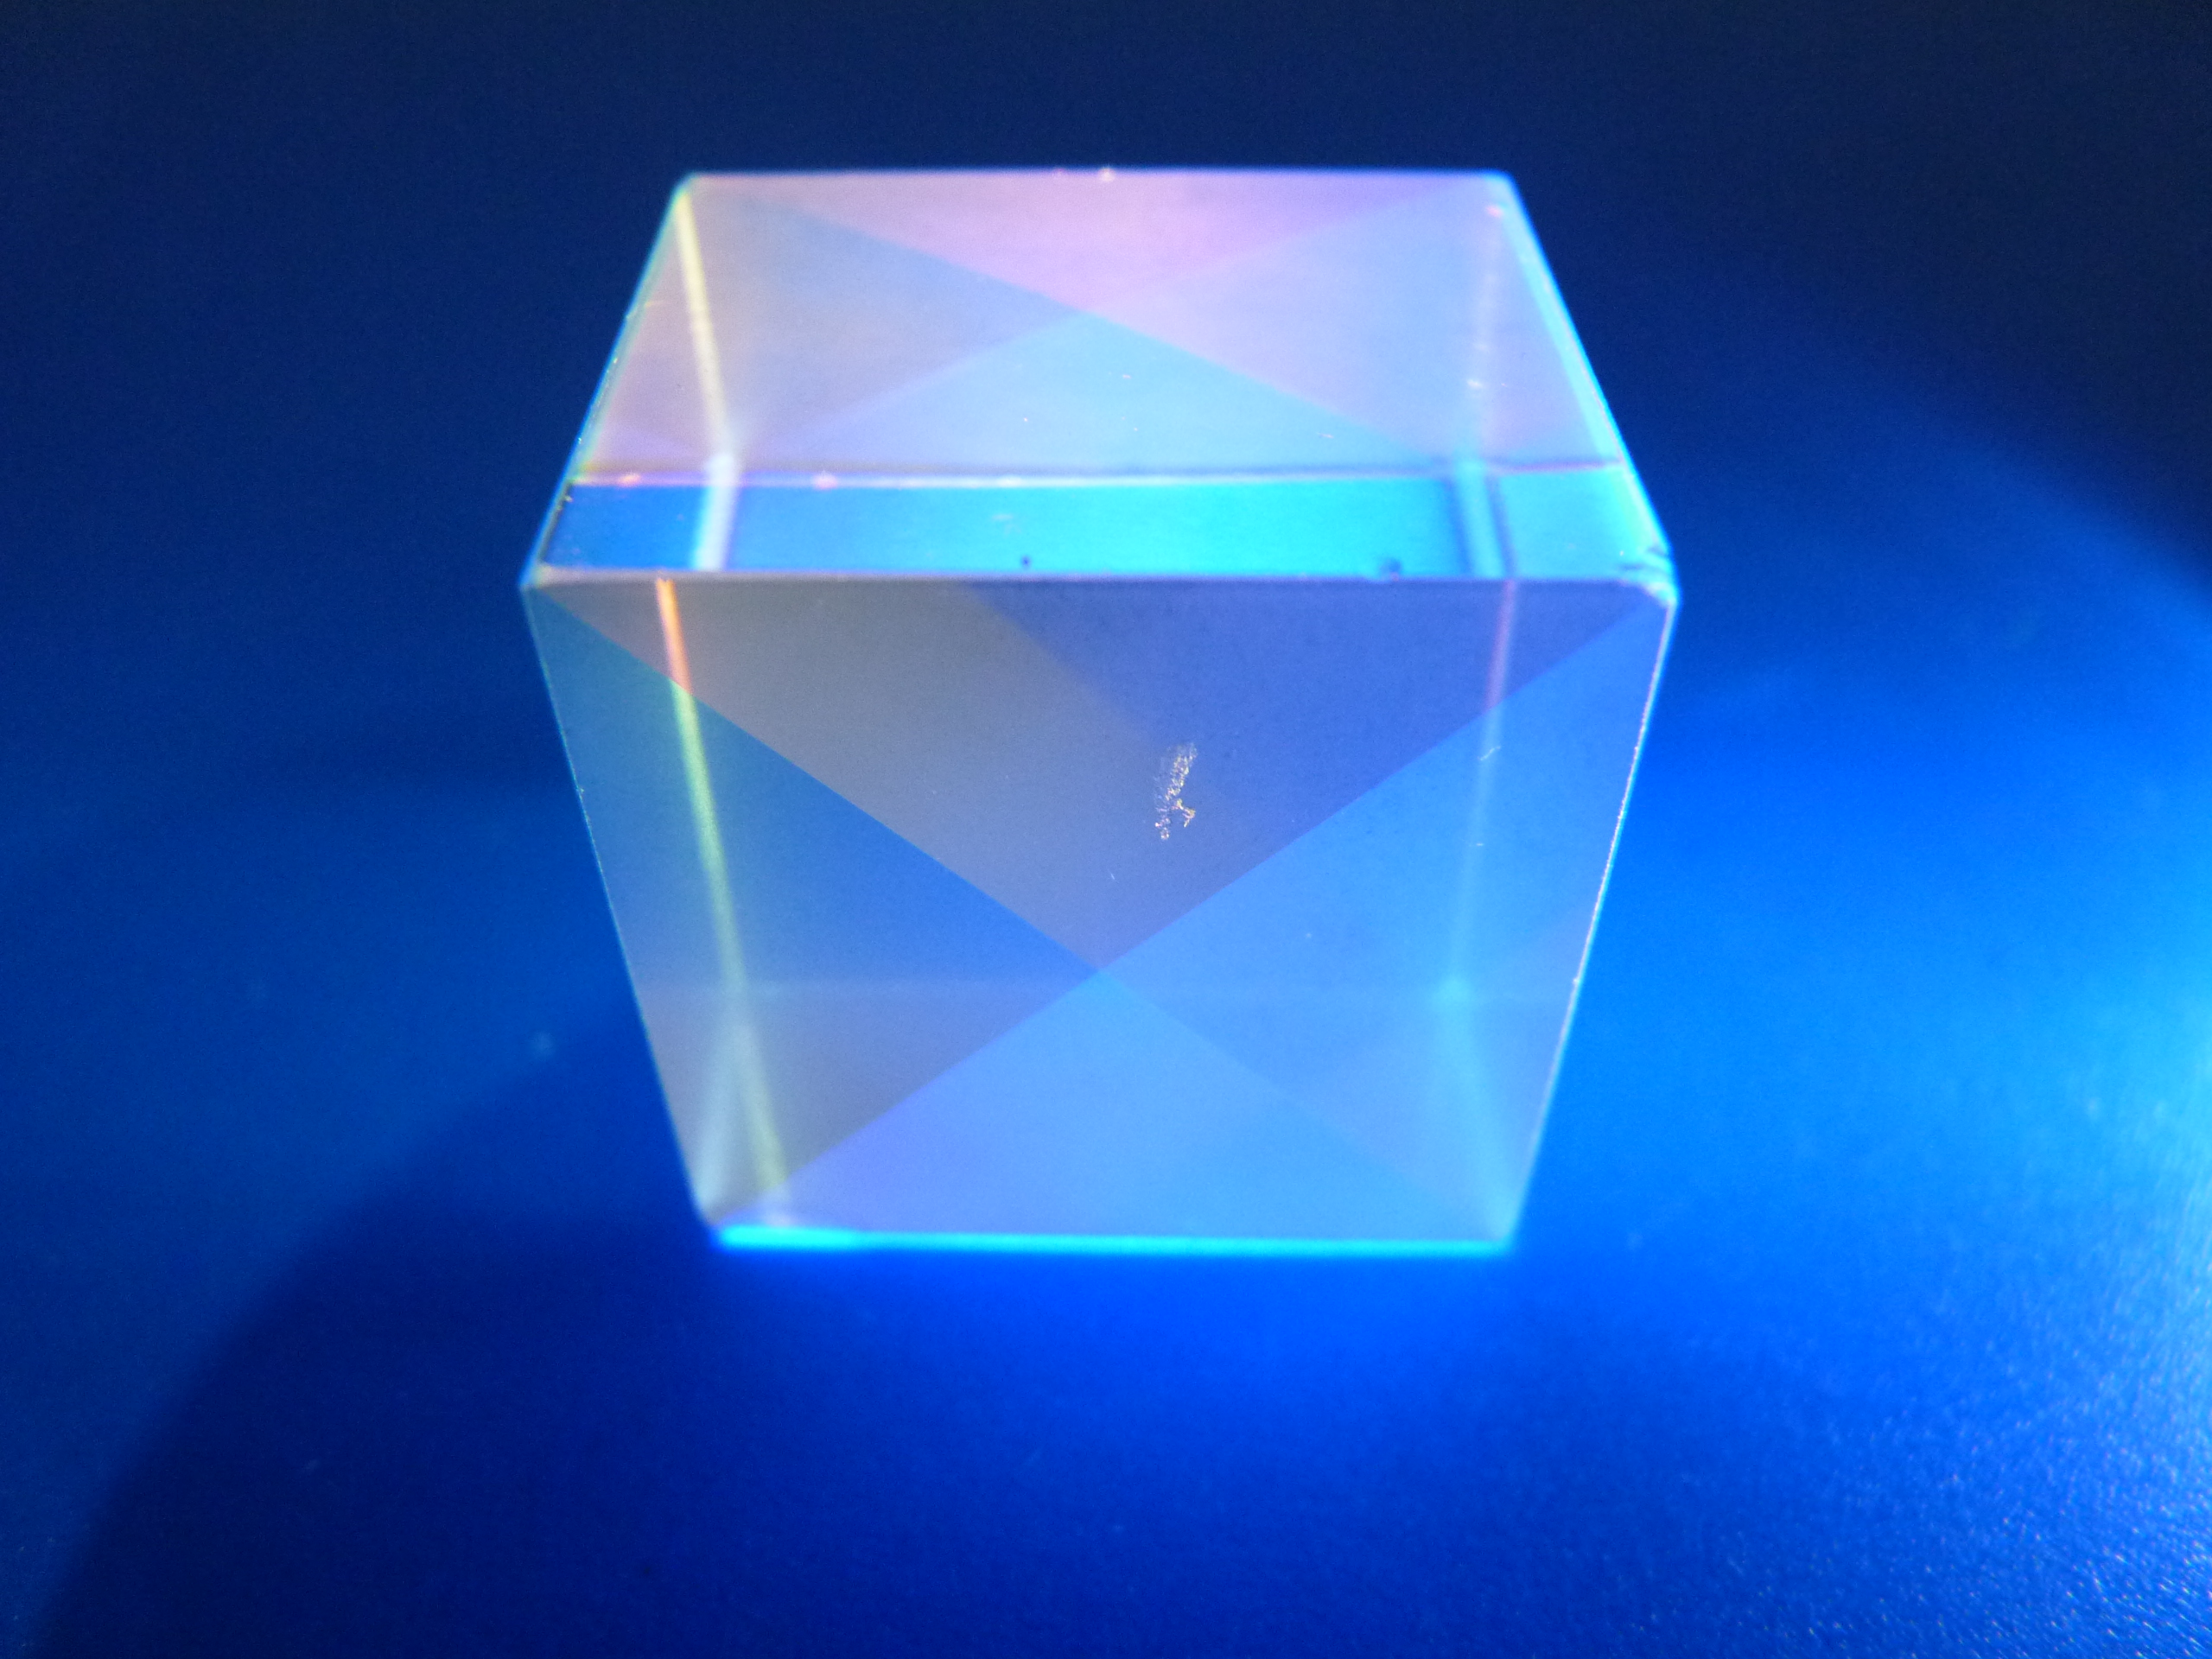 X-Cube